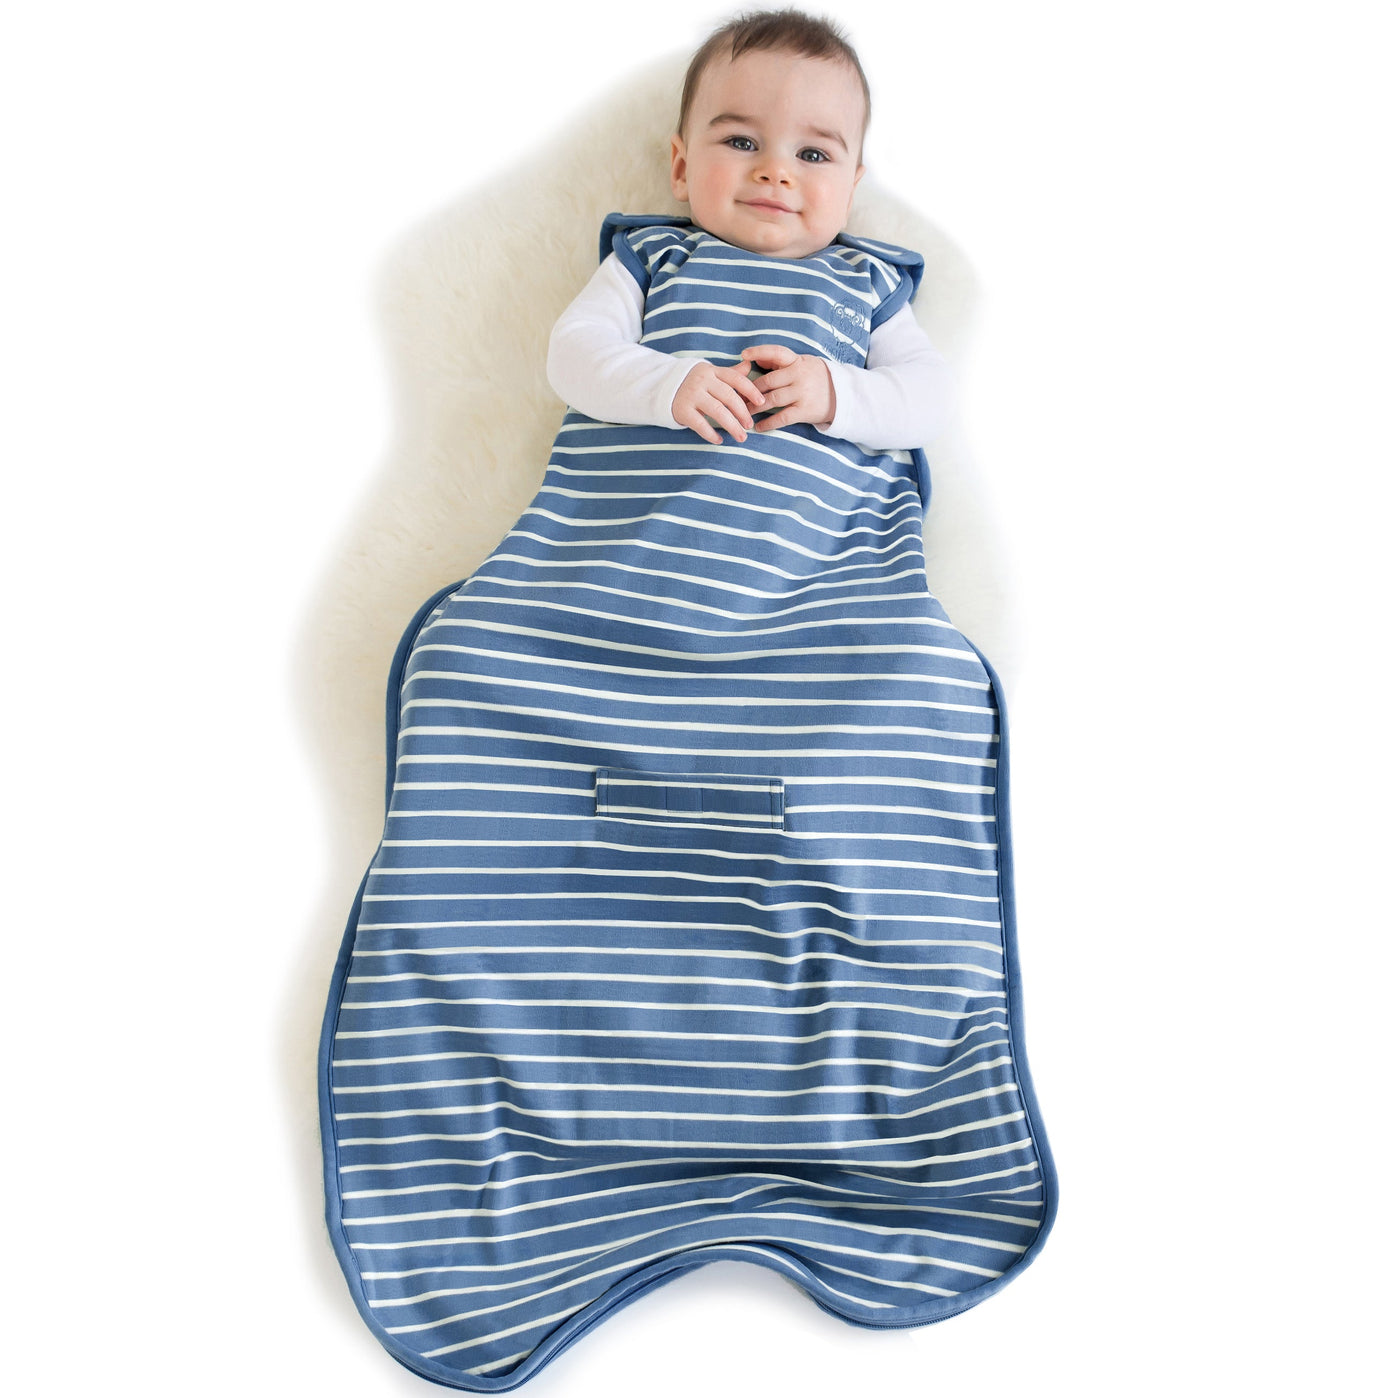 4 Season® Ultimate Baby Sleep Bag, Merino Wool, 2 Months - 2 Years, Navy Blue